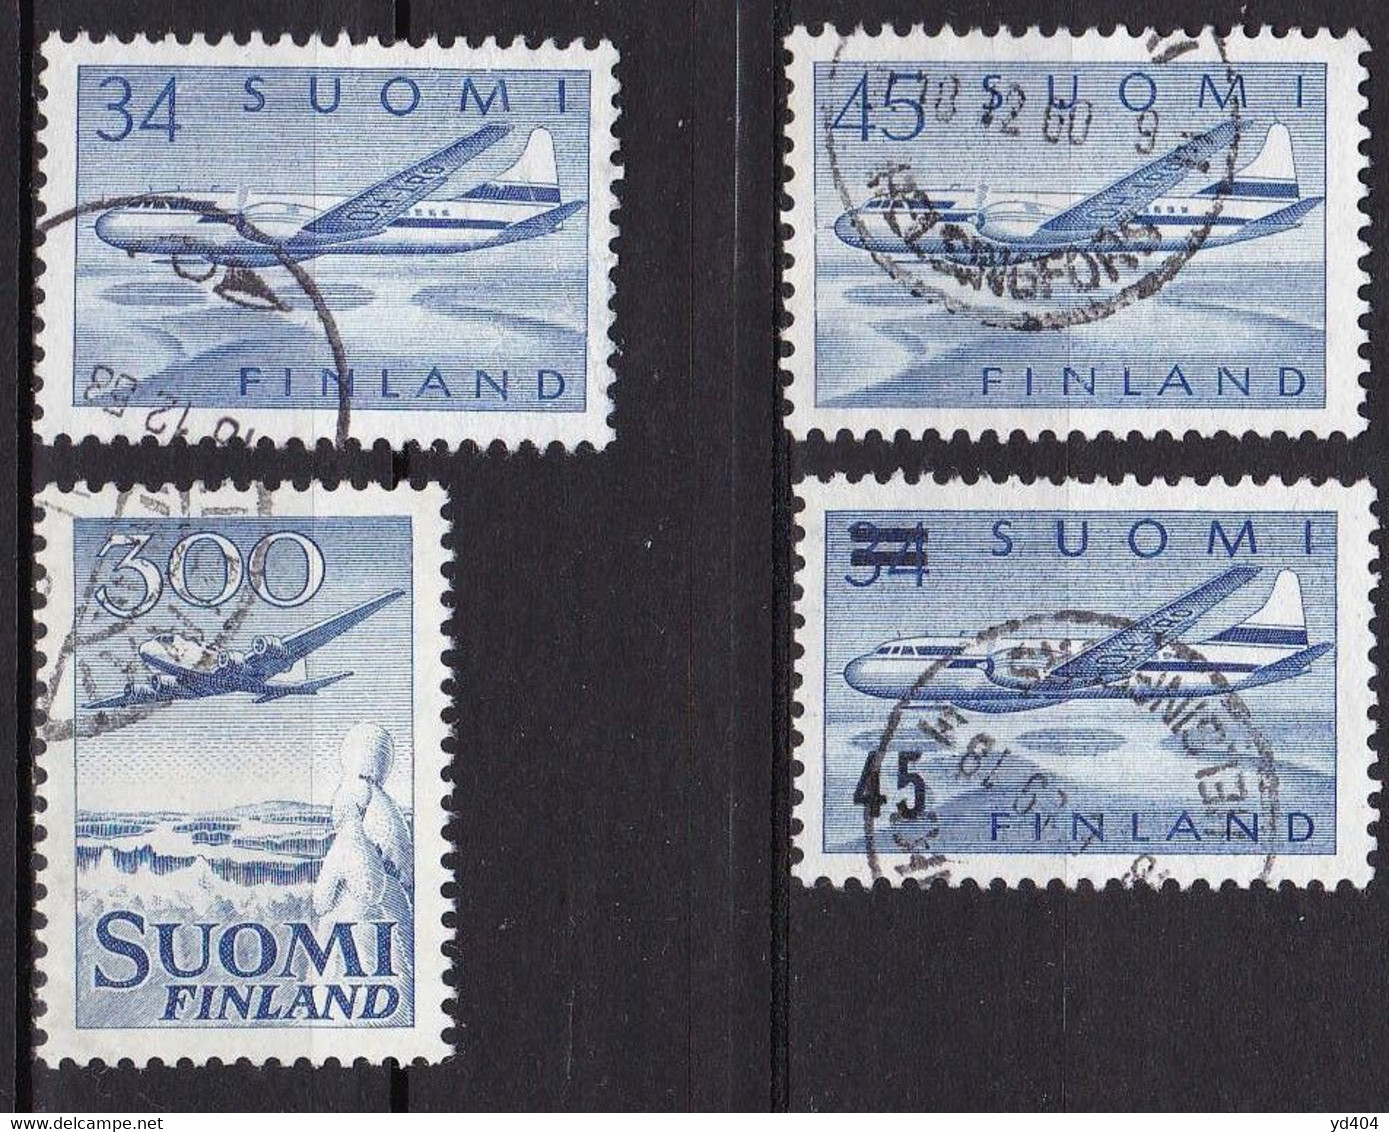 FI333 – FINLANDE – FINLAND – AIRMAIL - 1958-59 – Y&T 4/7 USED 8,50 € - Gebraucht